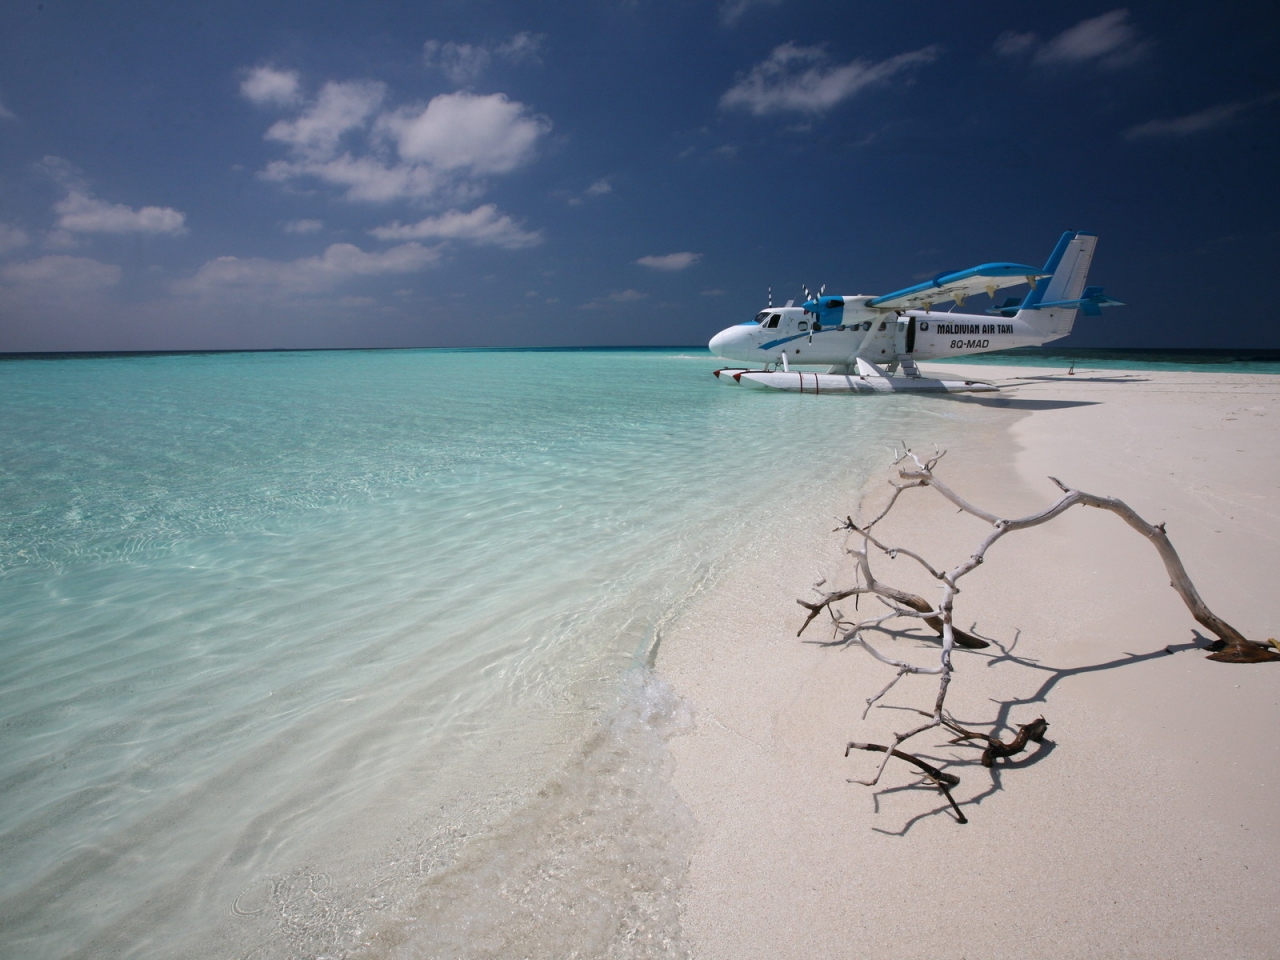 Maldivian Air Taxi for 1280 x 960 resolution